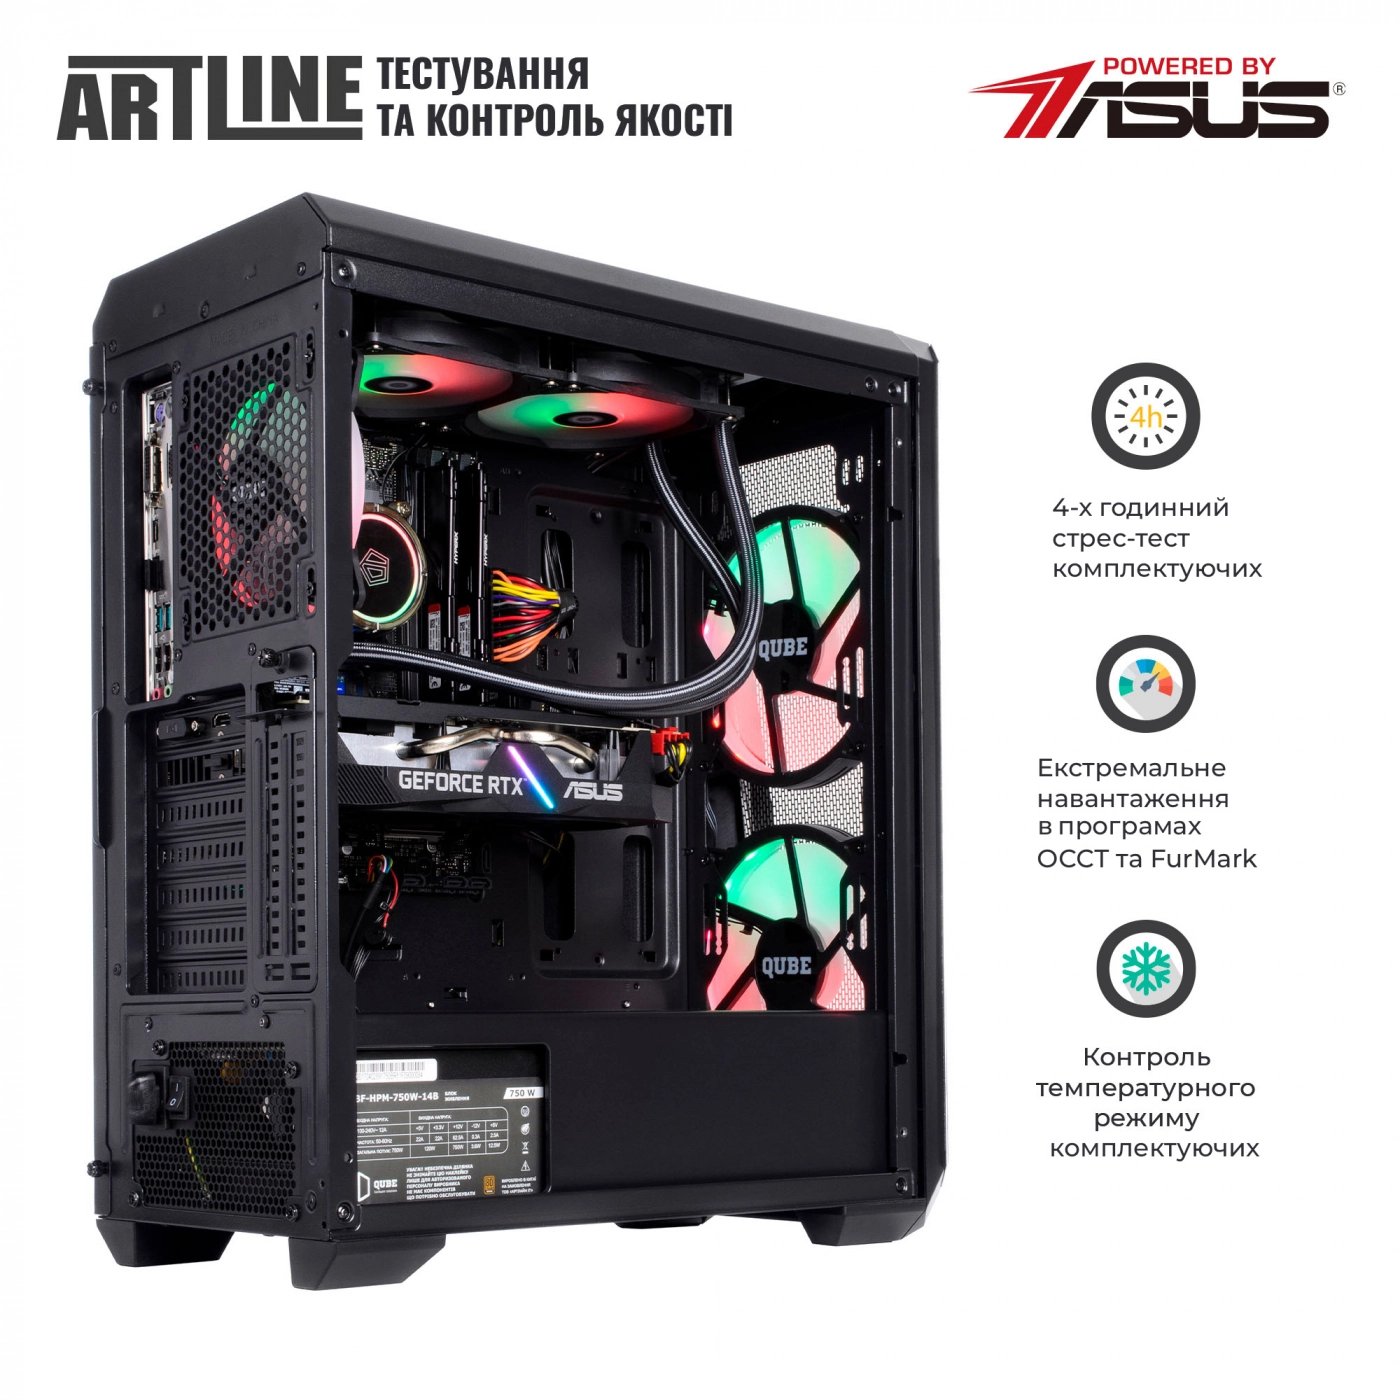 Купить Компьютер ARTLINE Gaming X77v54 - фото 9